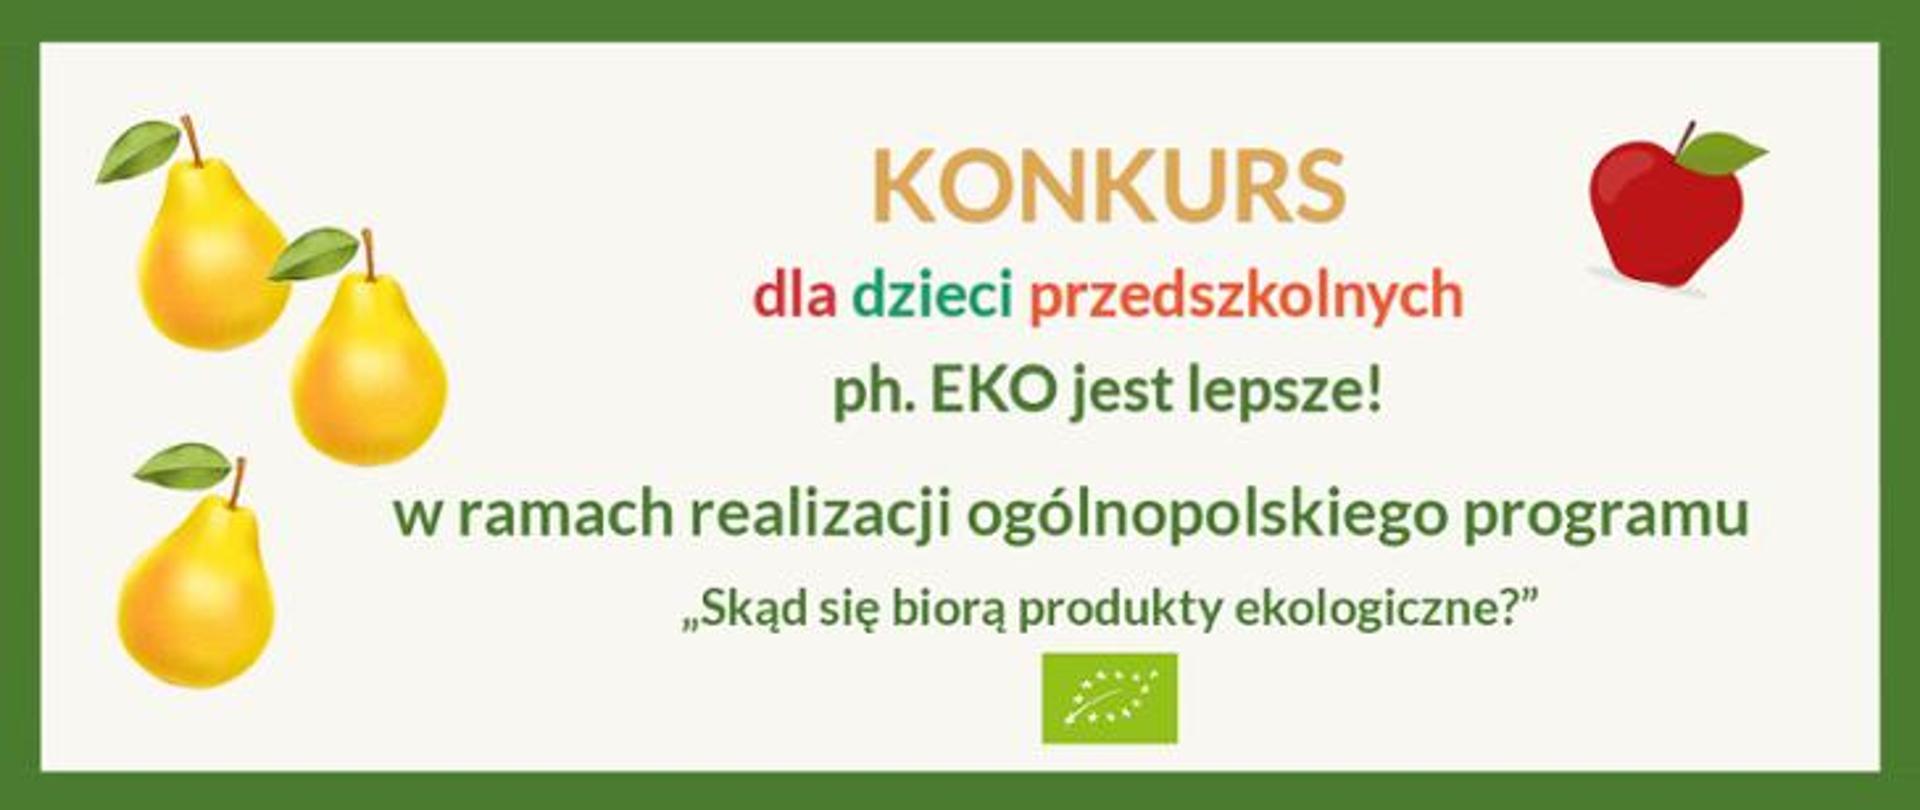 informacja o konkursie: ph. EKO jest lepsze! w ramach realizacji ogólnopolskiego programu "Skąd się biorą produkty ekologiczne?"